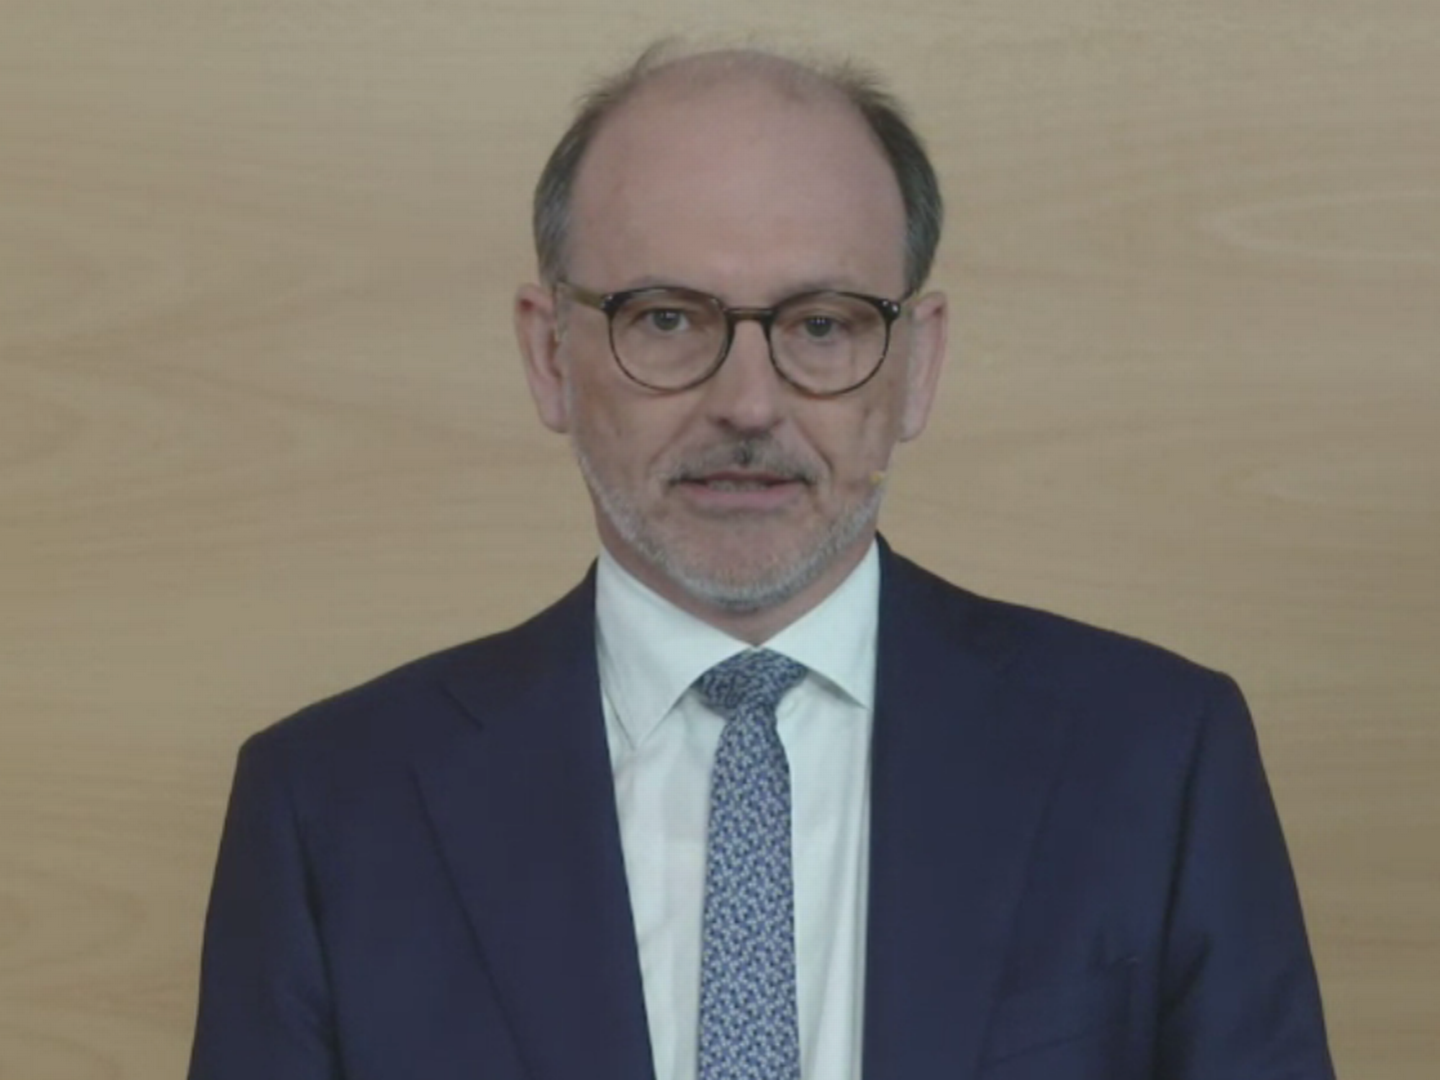 Thomas Groß, CEO der Helaba, auf der virtuellen Pressekonferenz. | Foto: Screenshot/FinanzBusiness